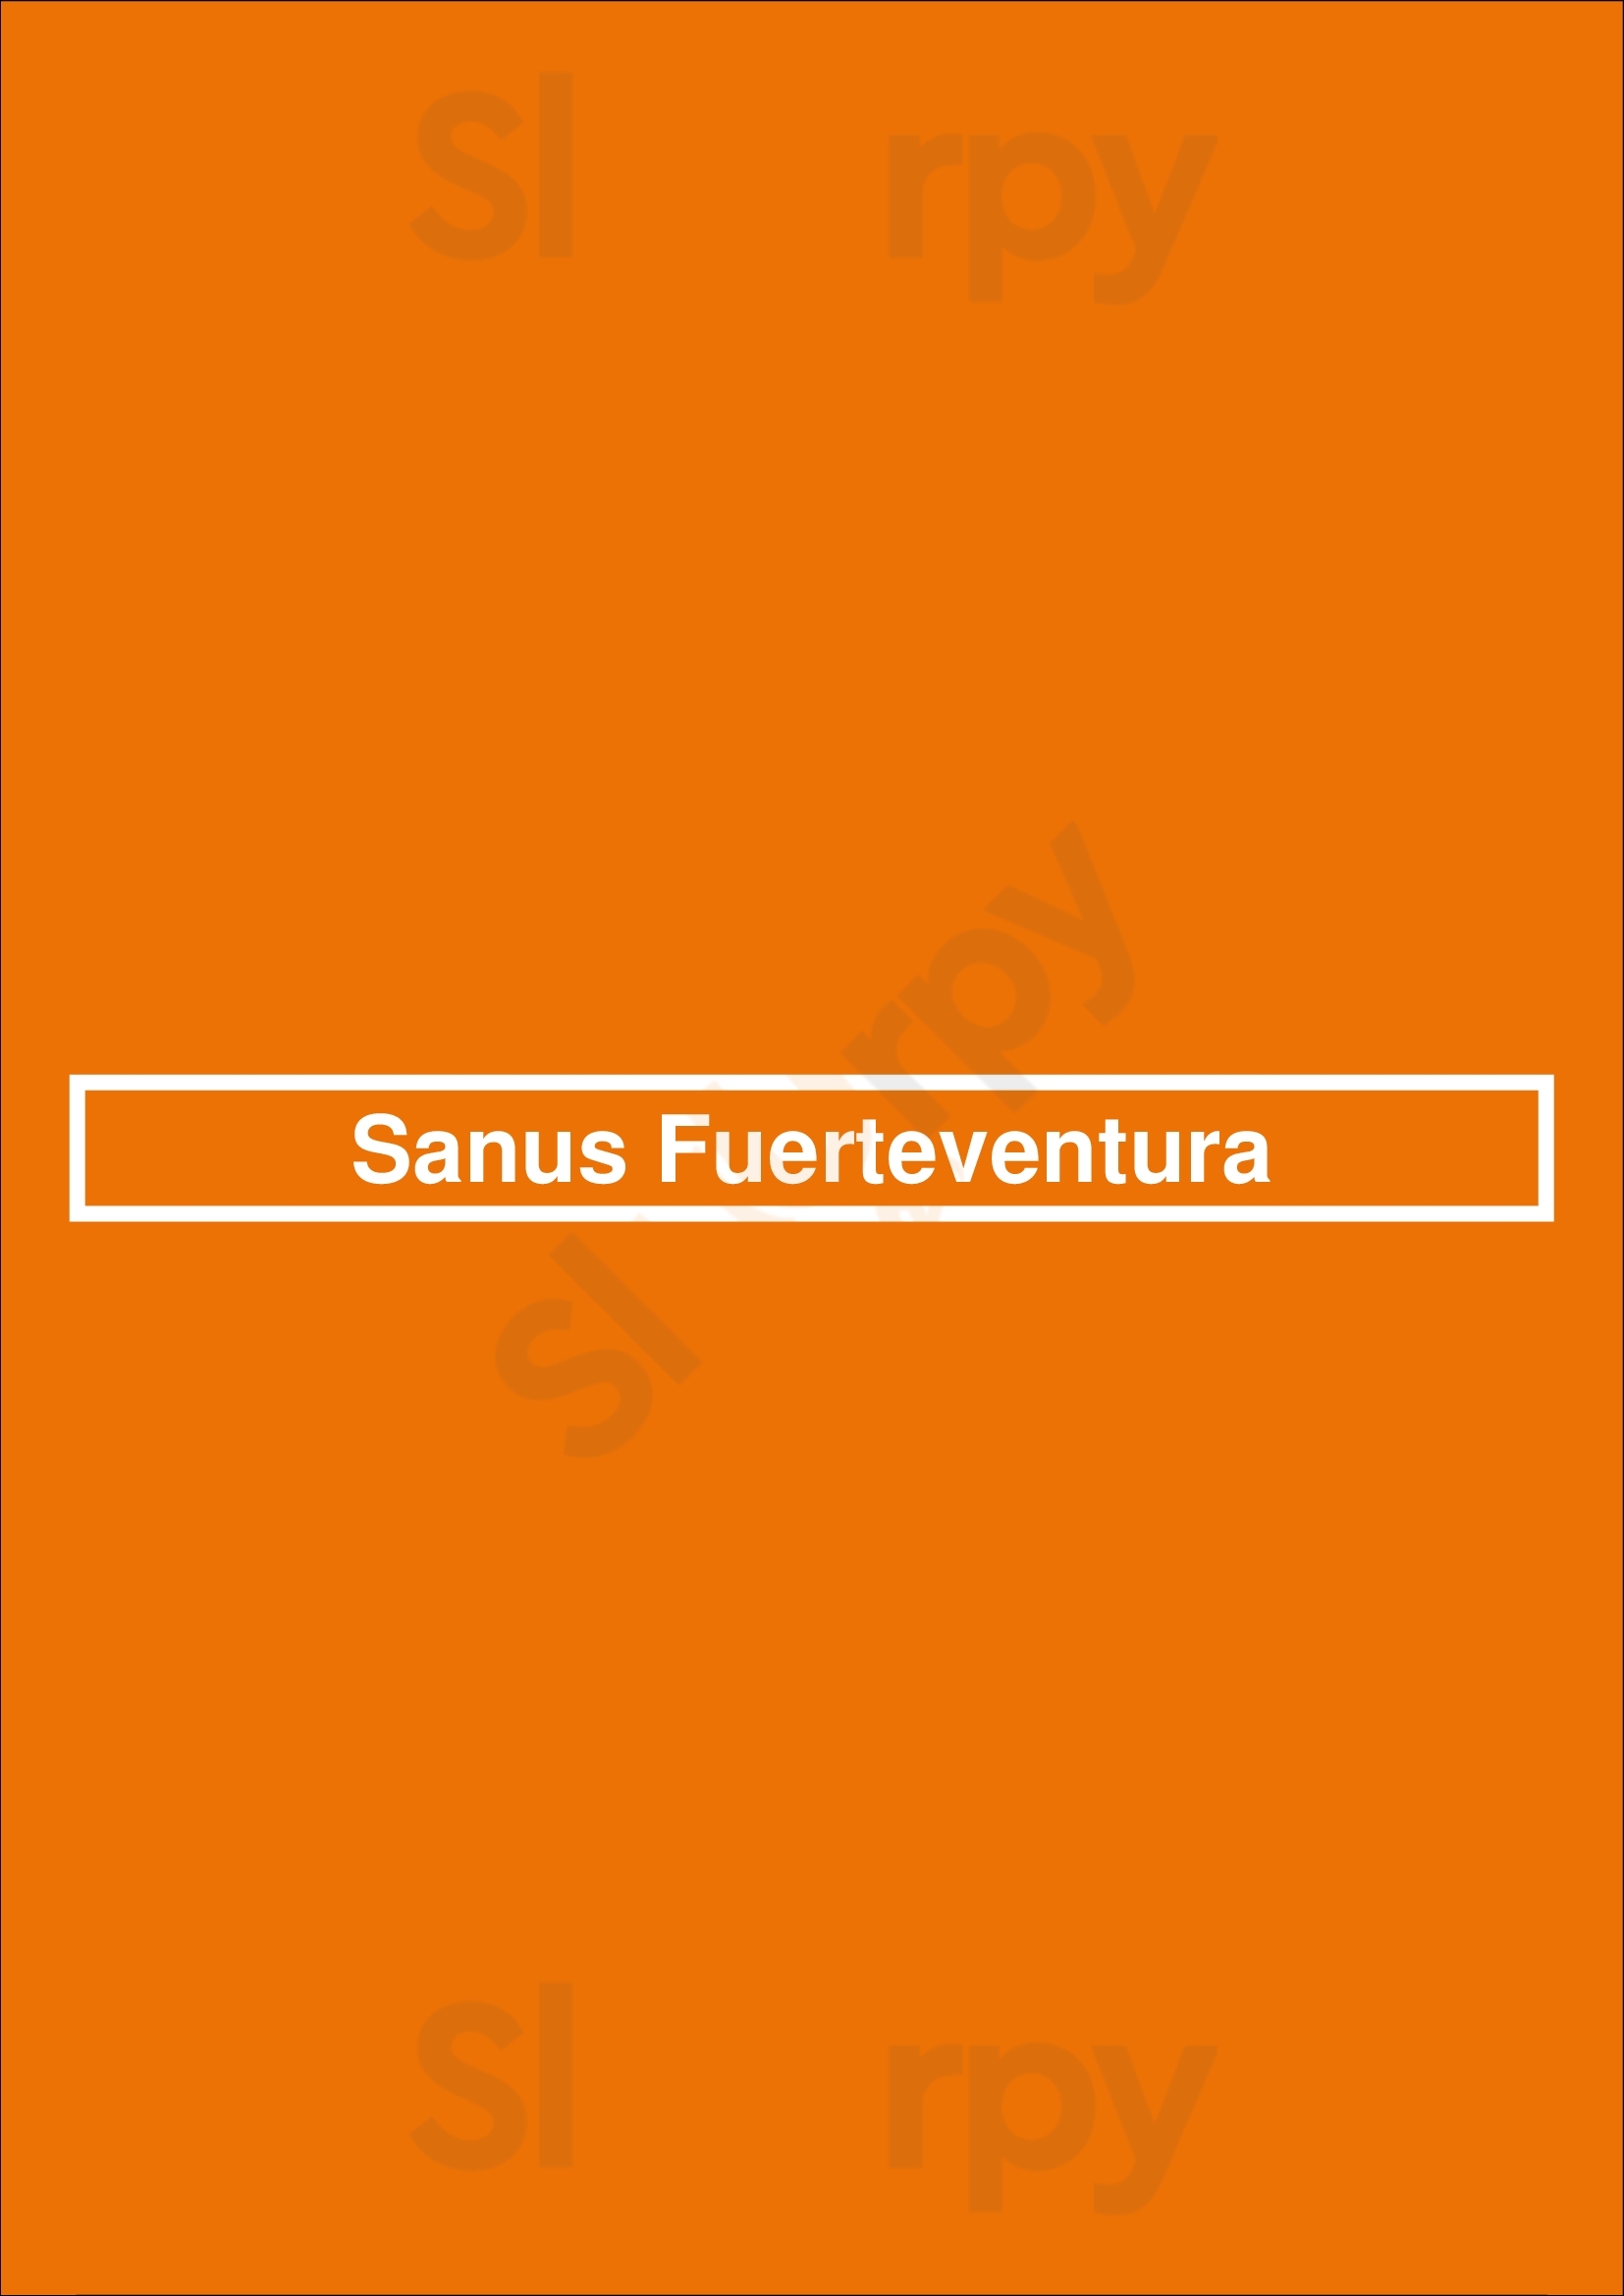 Sanus Fuerteventura Corralejo Menu - 1